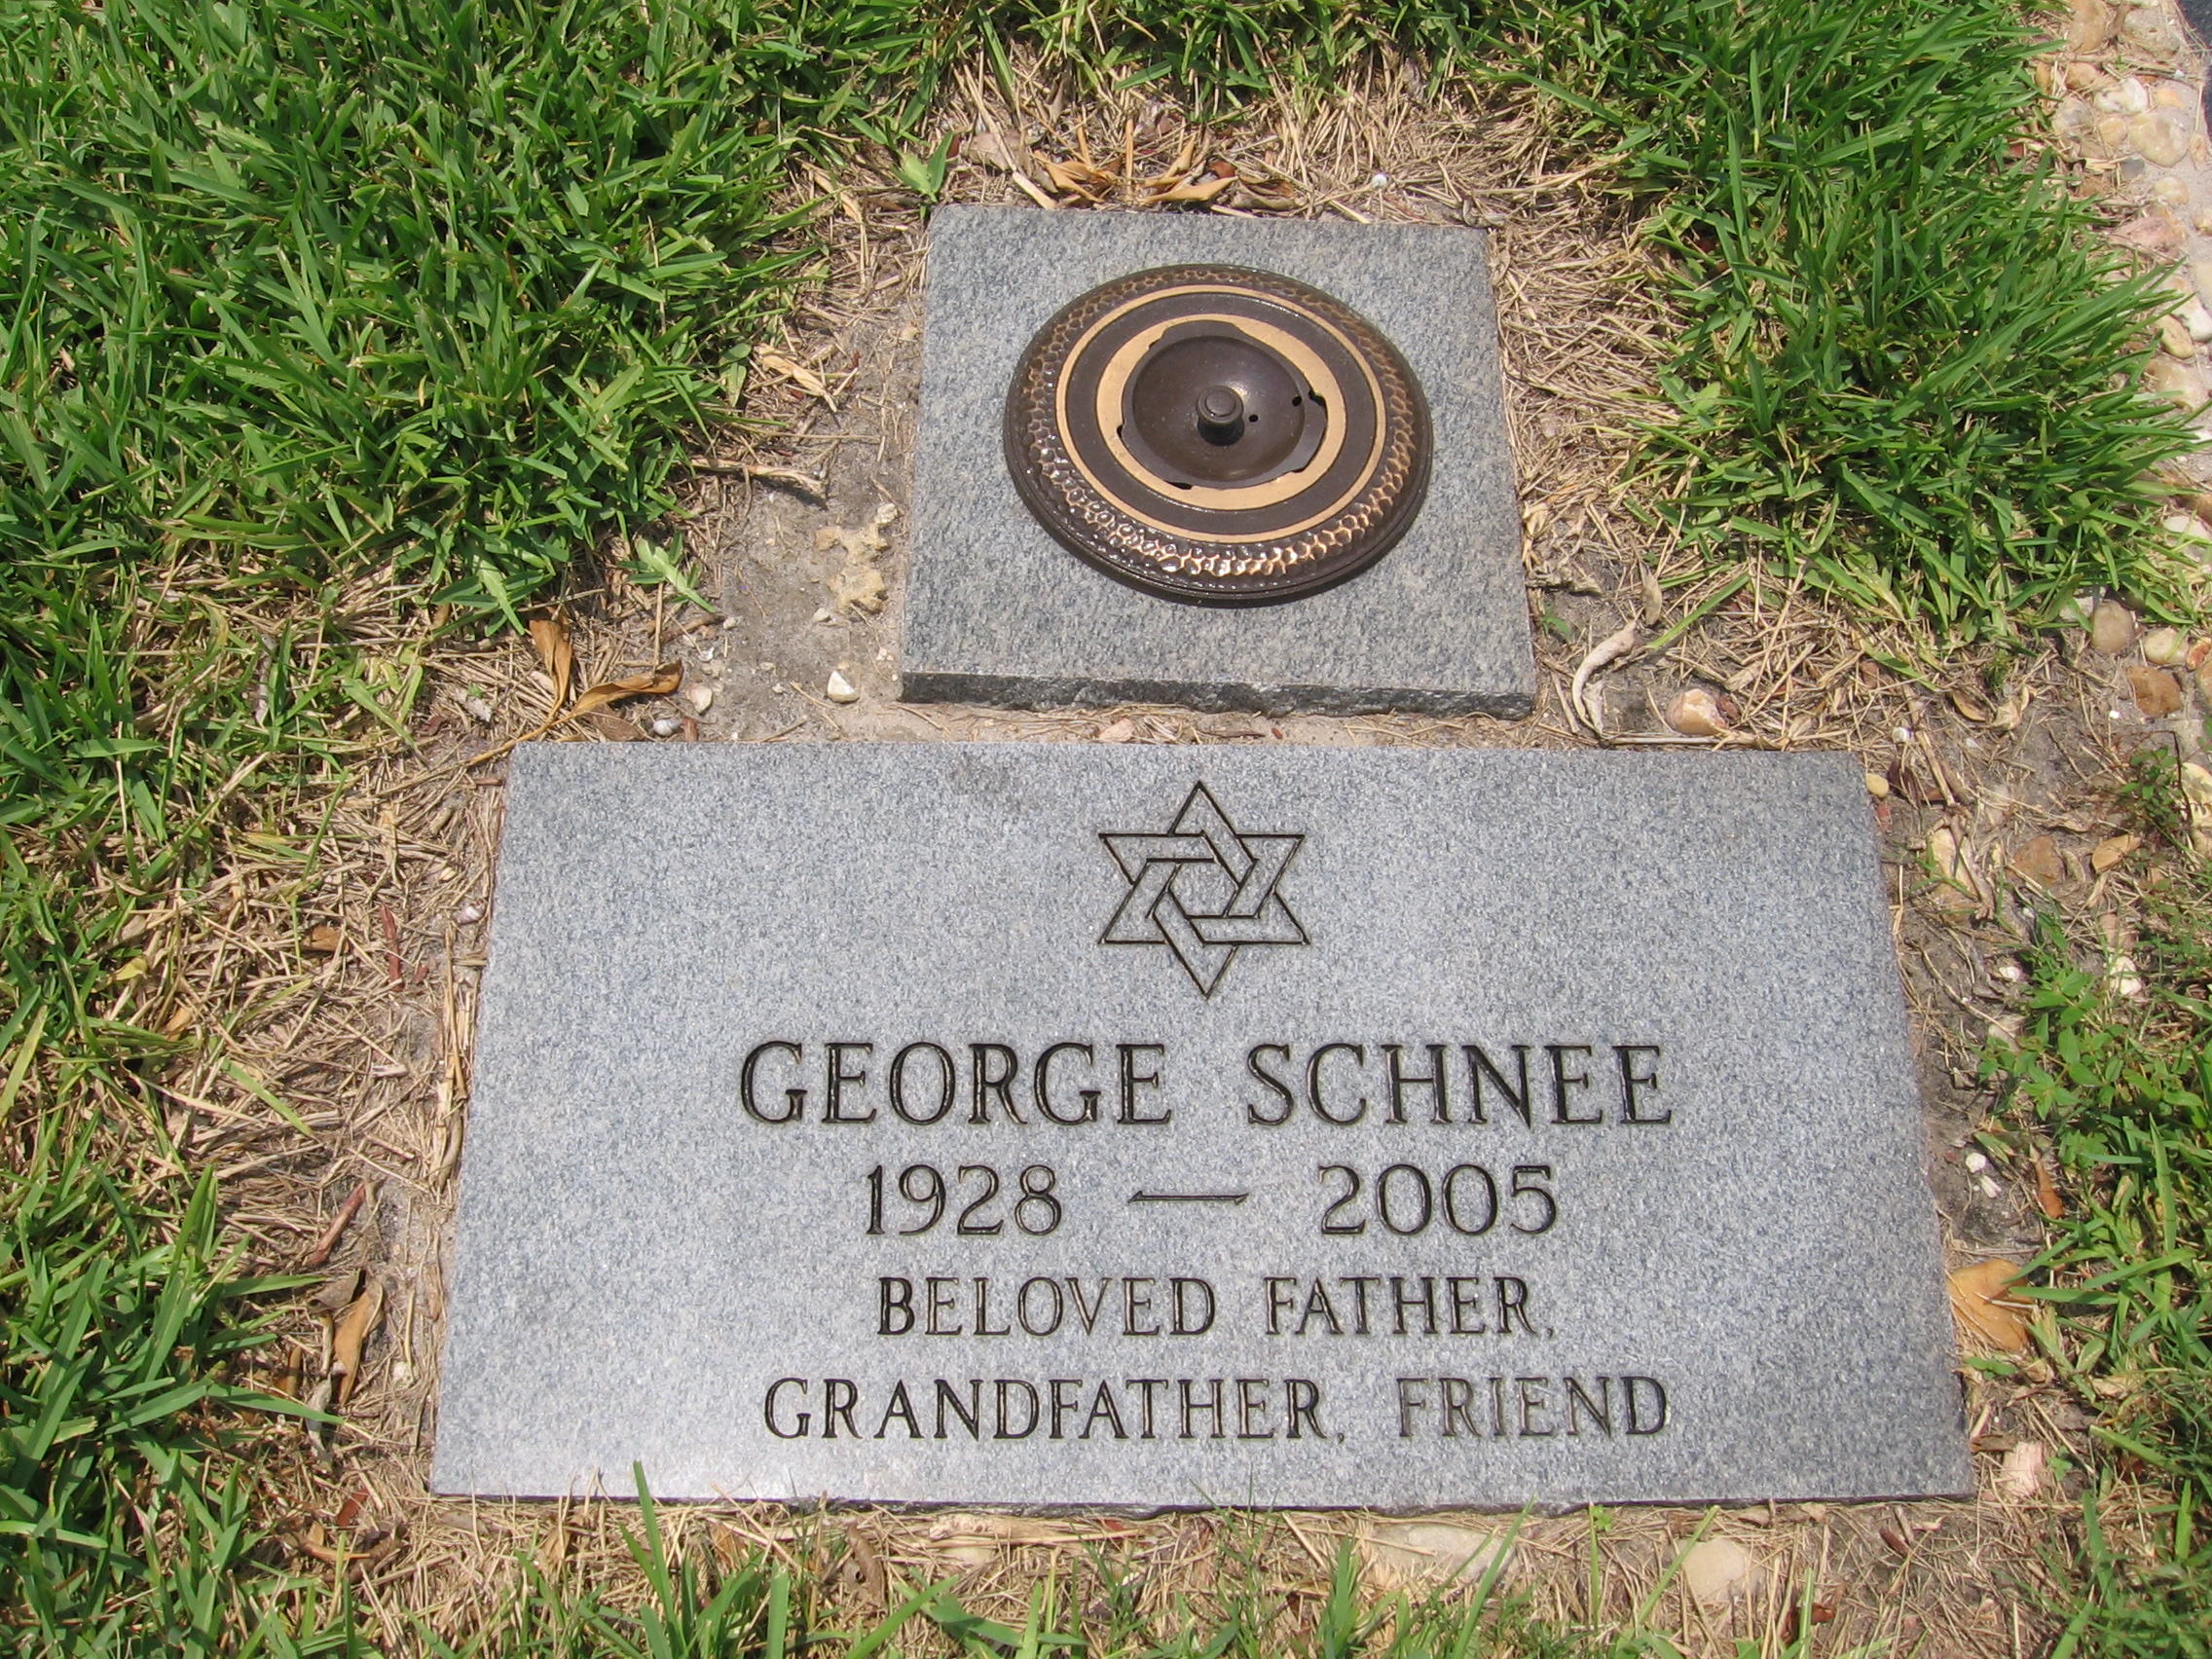 George Schnee